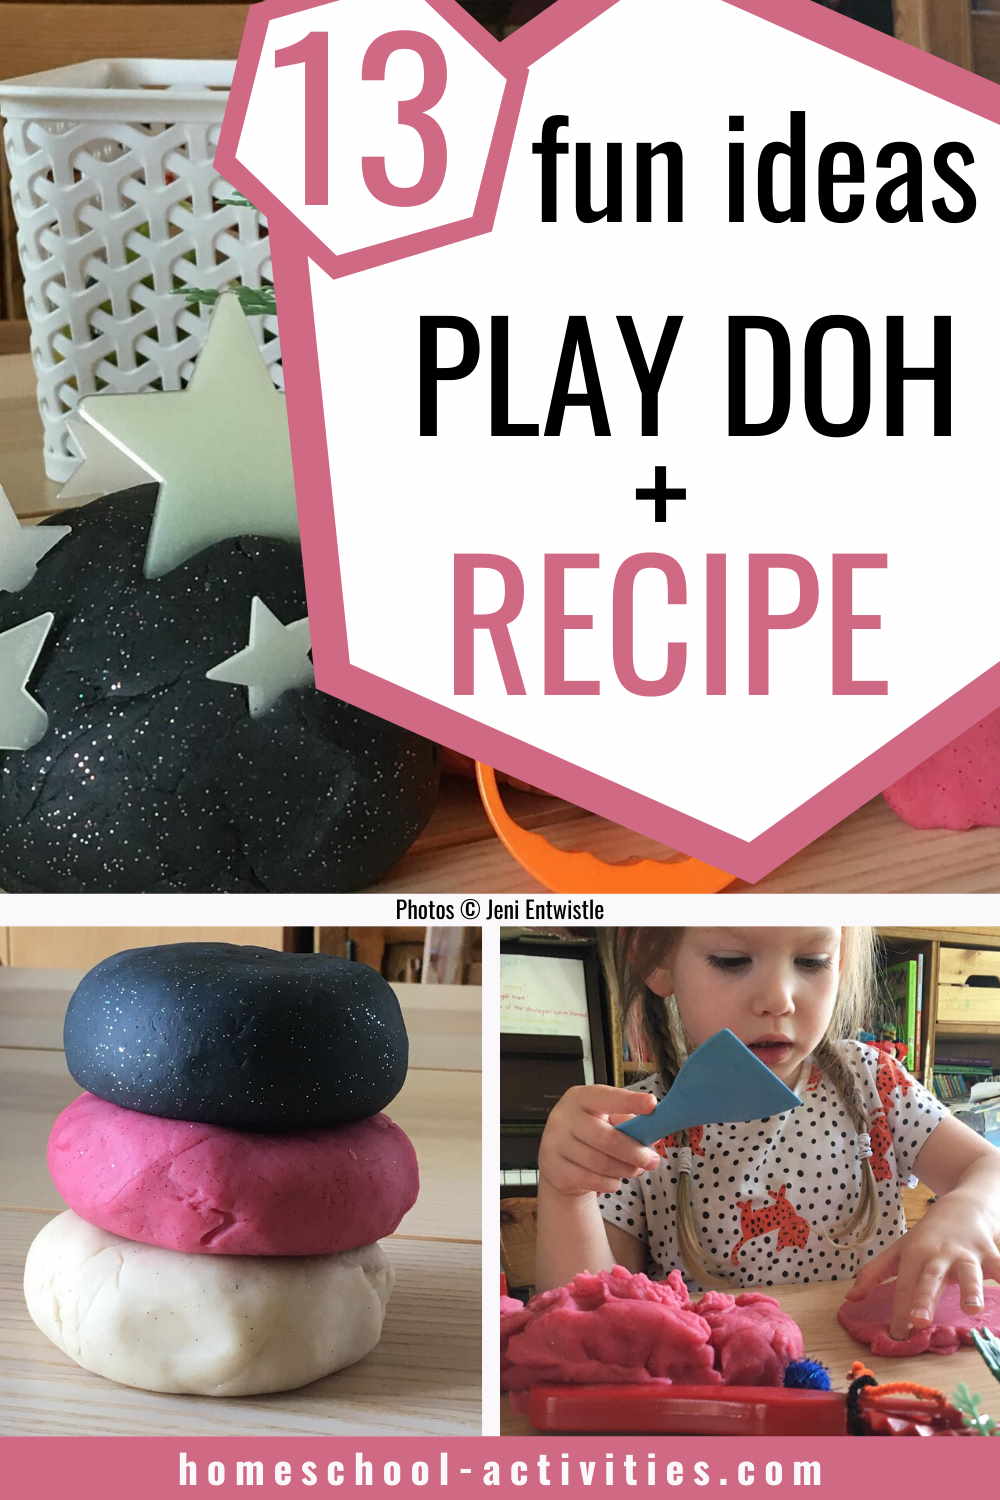 Playdough recipe and ideas